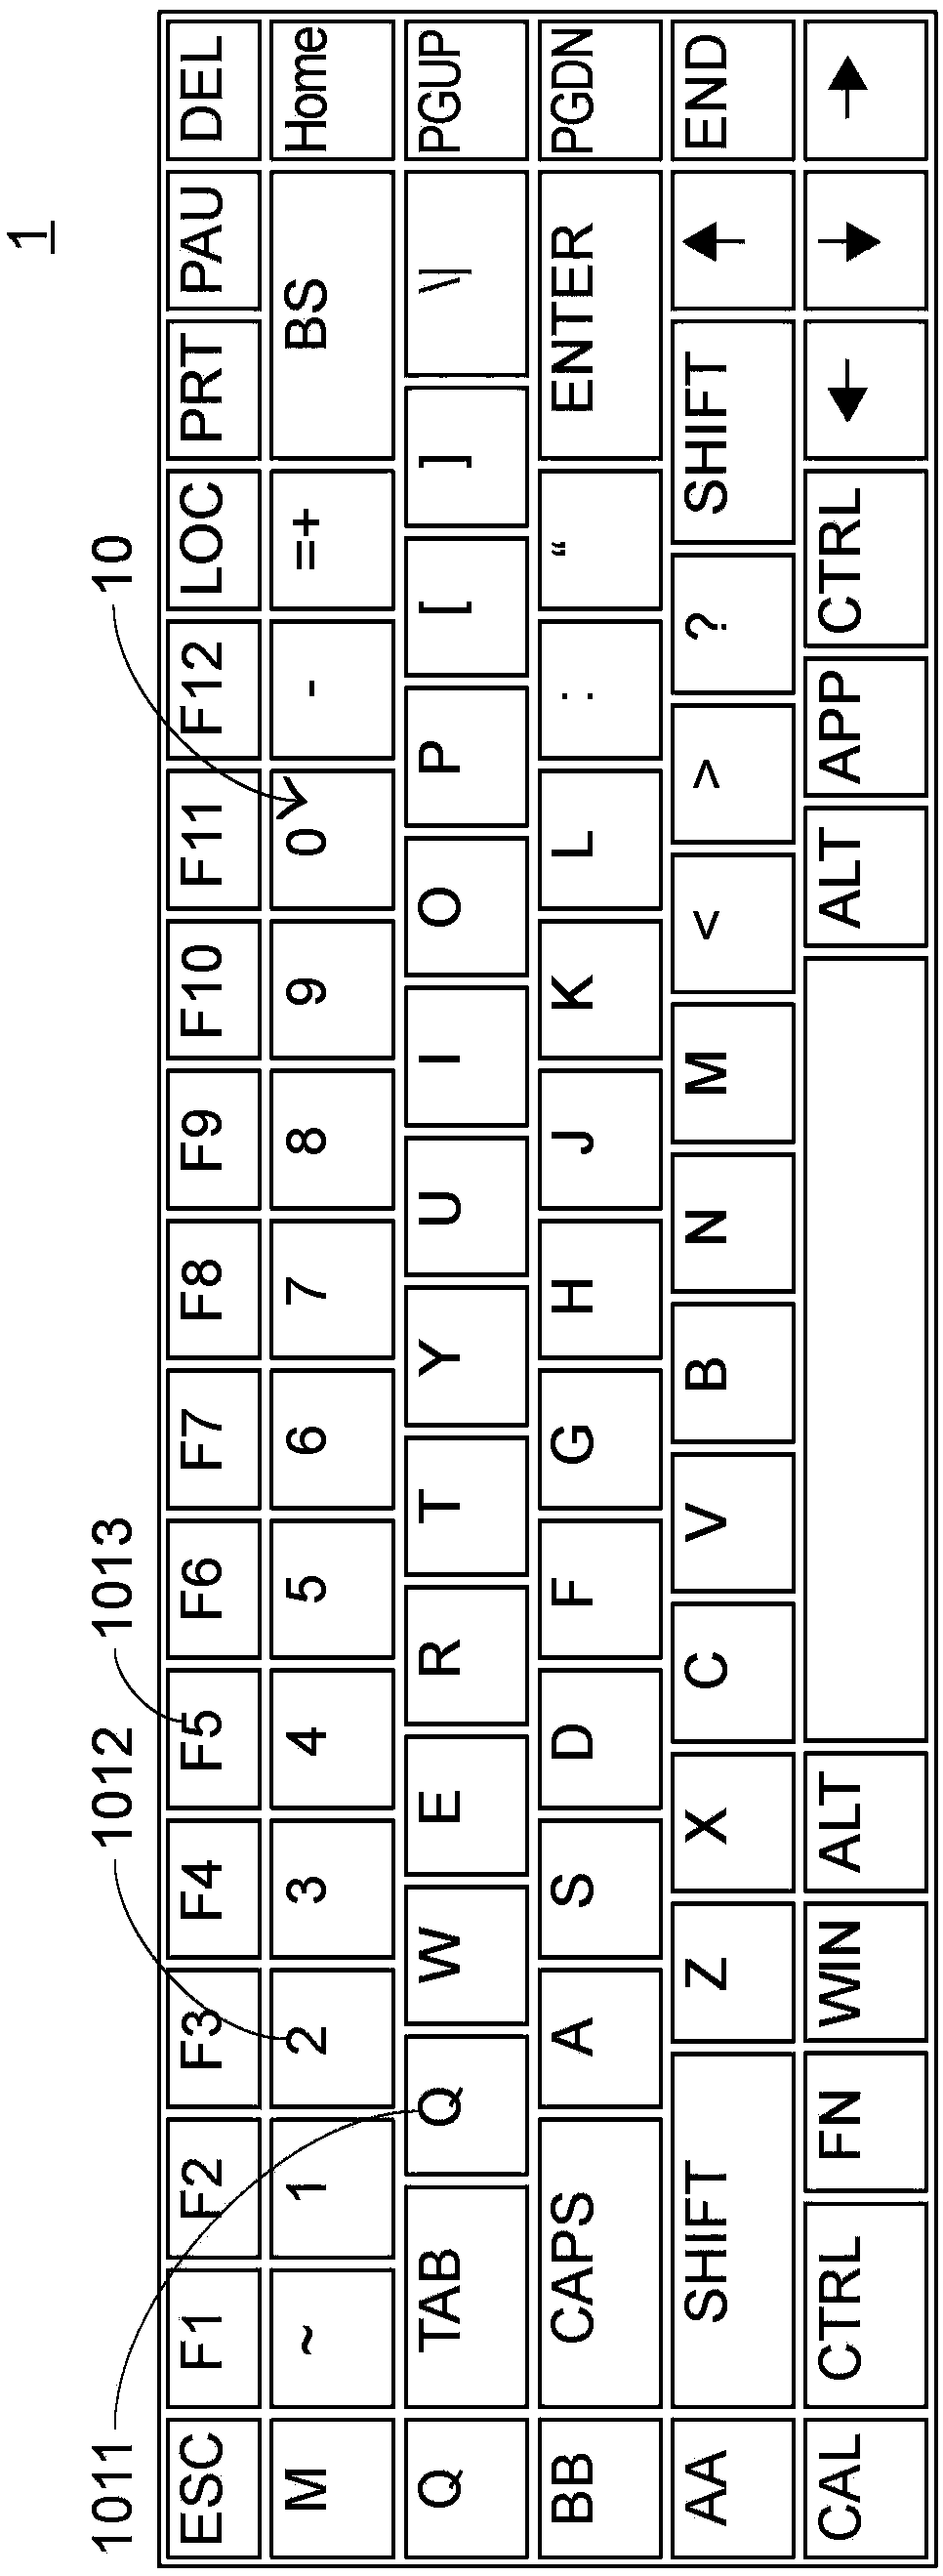 Keyboard device